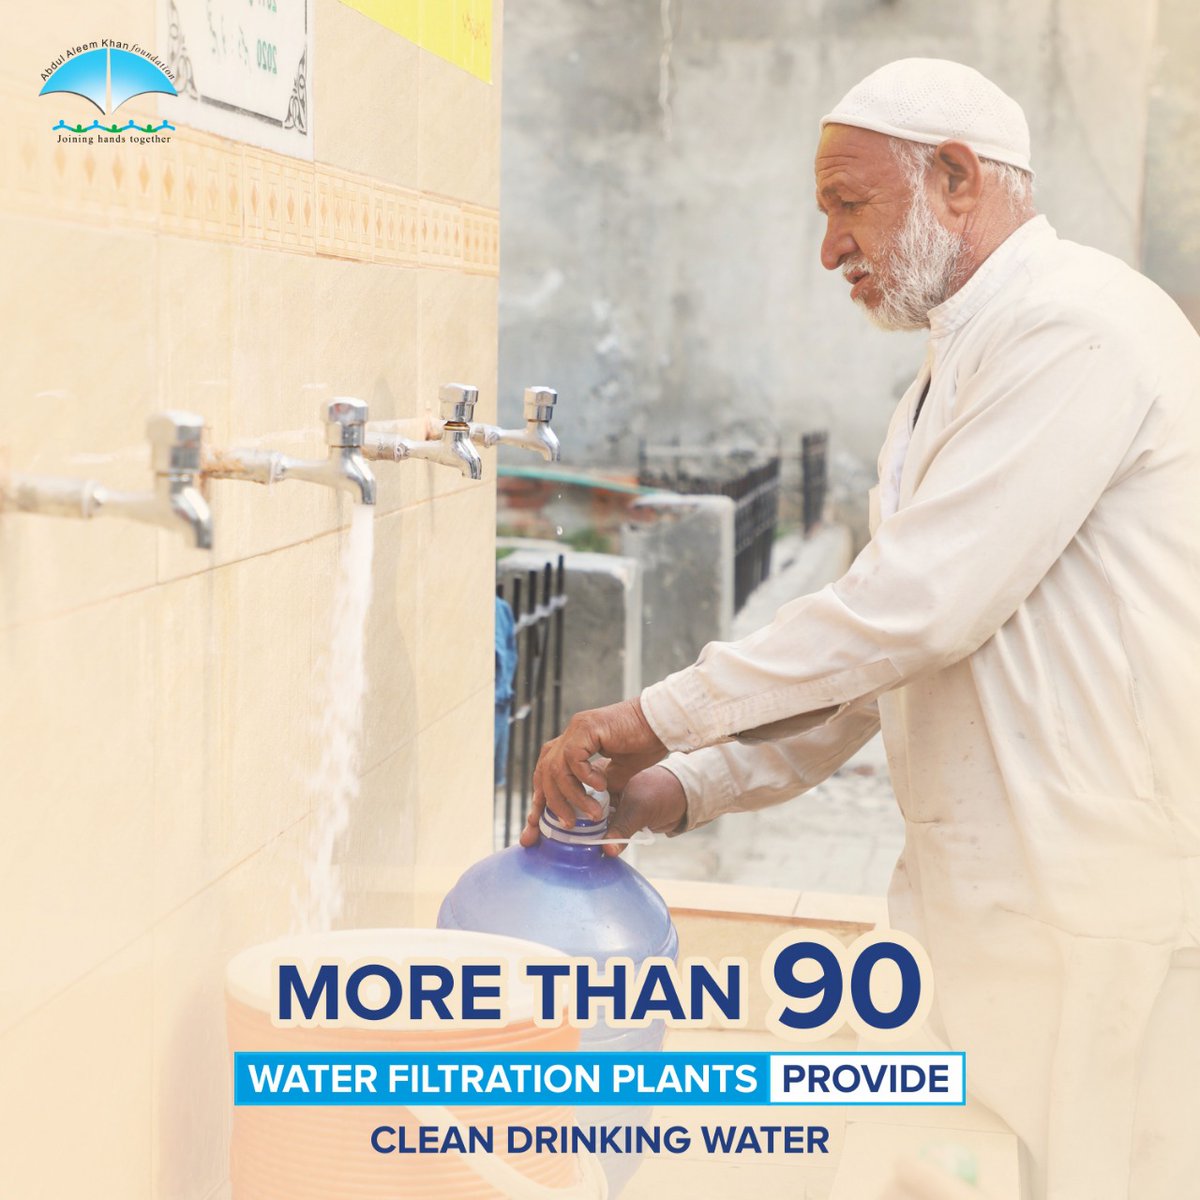 عبدالعلیم خان فاؤنڈیشن ہر لمحہ، ہروقت انسانیت کی خدمت کیلیے اپنا کردار ادا کر رہی ہے۔ لاہور میں 68 اور پنجاب کے دیگر شہروں میں 25 کے قریب واٹر فلٹریشن پلانٹس نصب کئے گئے ہیں جن سے عوام لاکھوں گیلن روزانہ پینے کا صاف پانی فراہم کر رہے ہیں۔ 
#AAK_Foundation #WaterFiltrationPlants